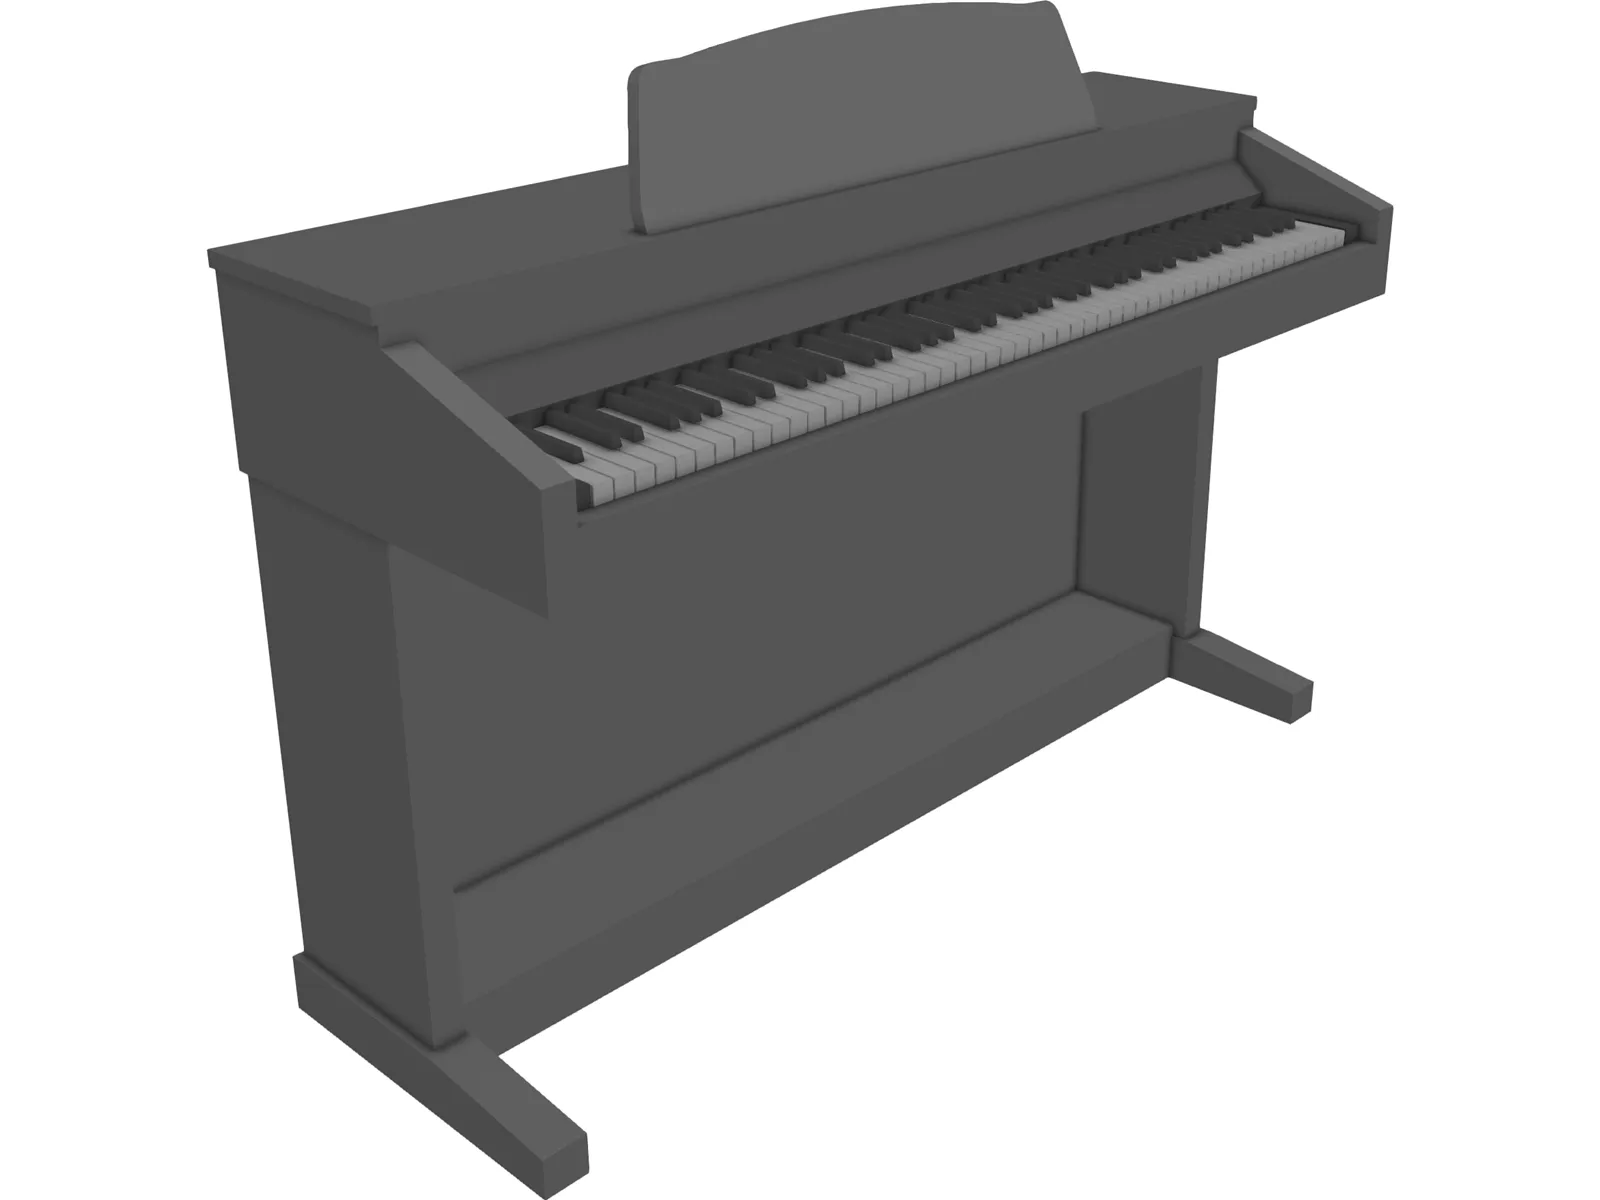 Kawai CA-5 Rosewood Digital Piano 3D Model